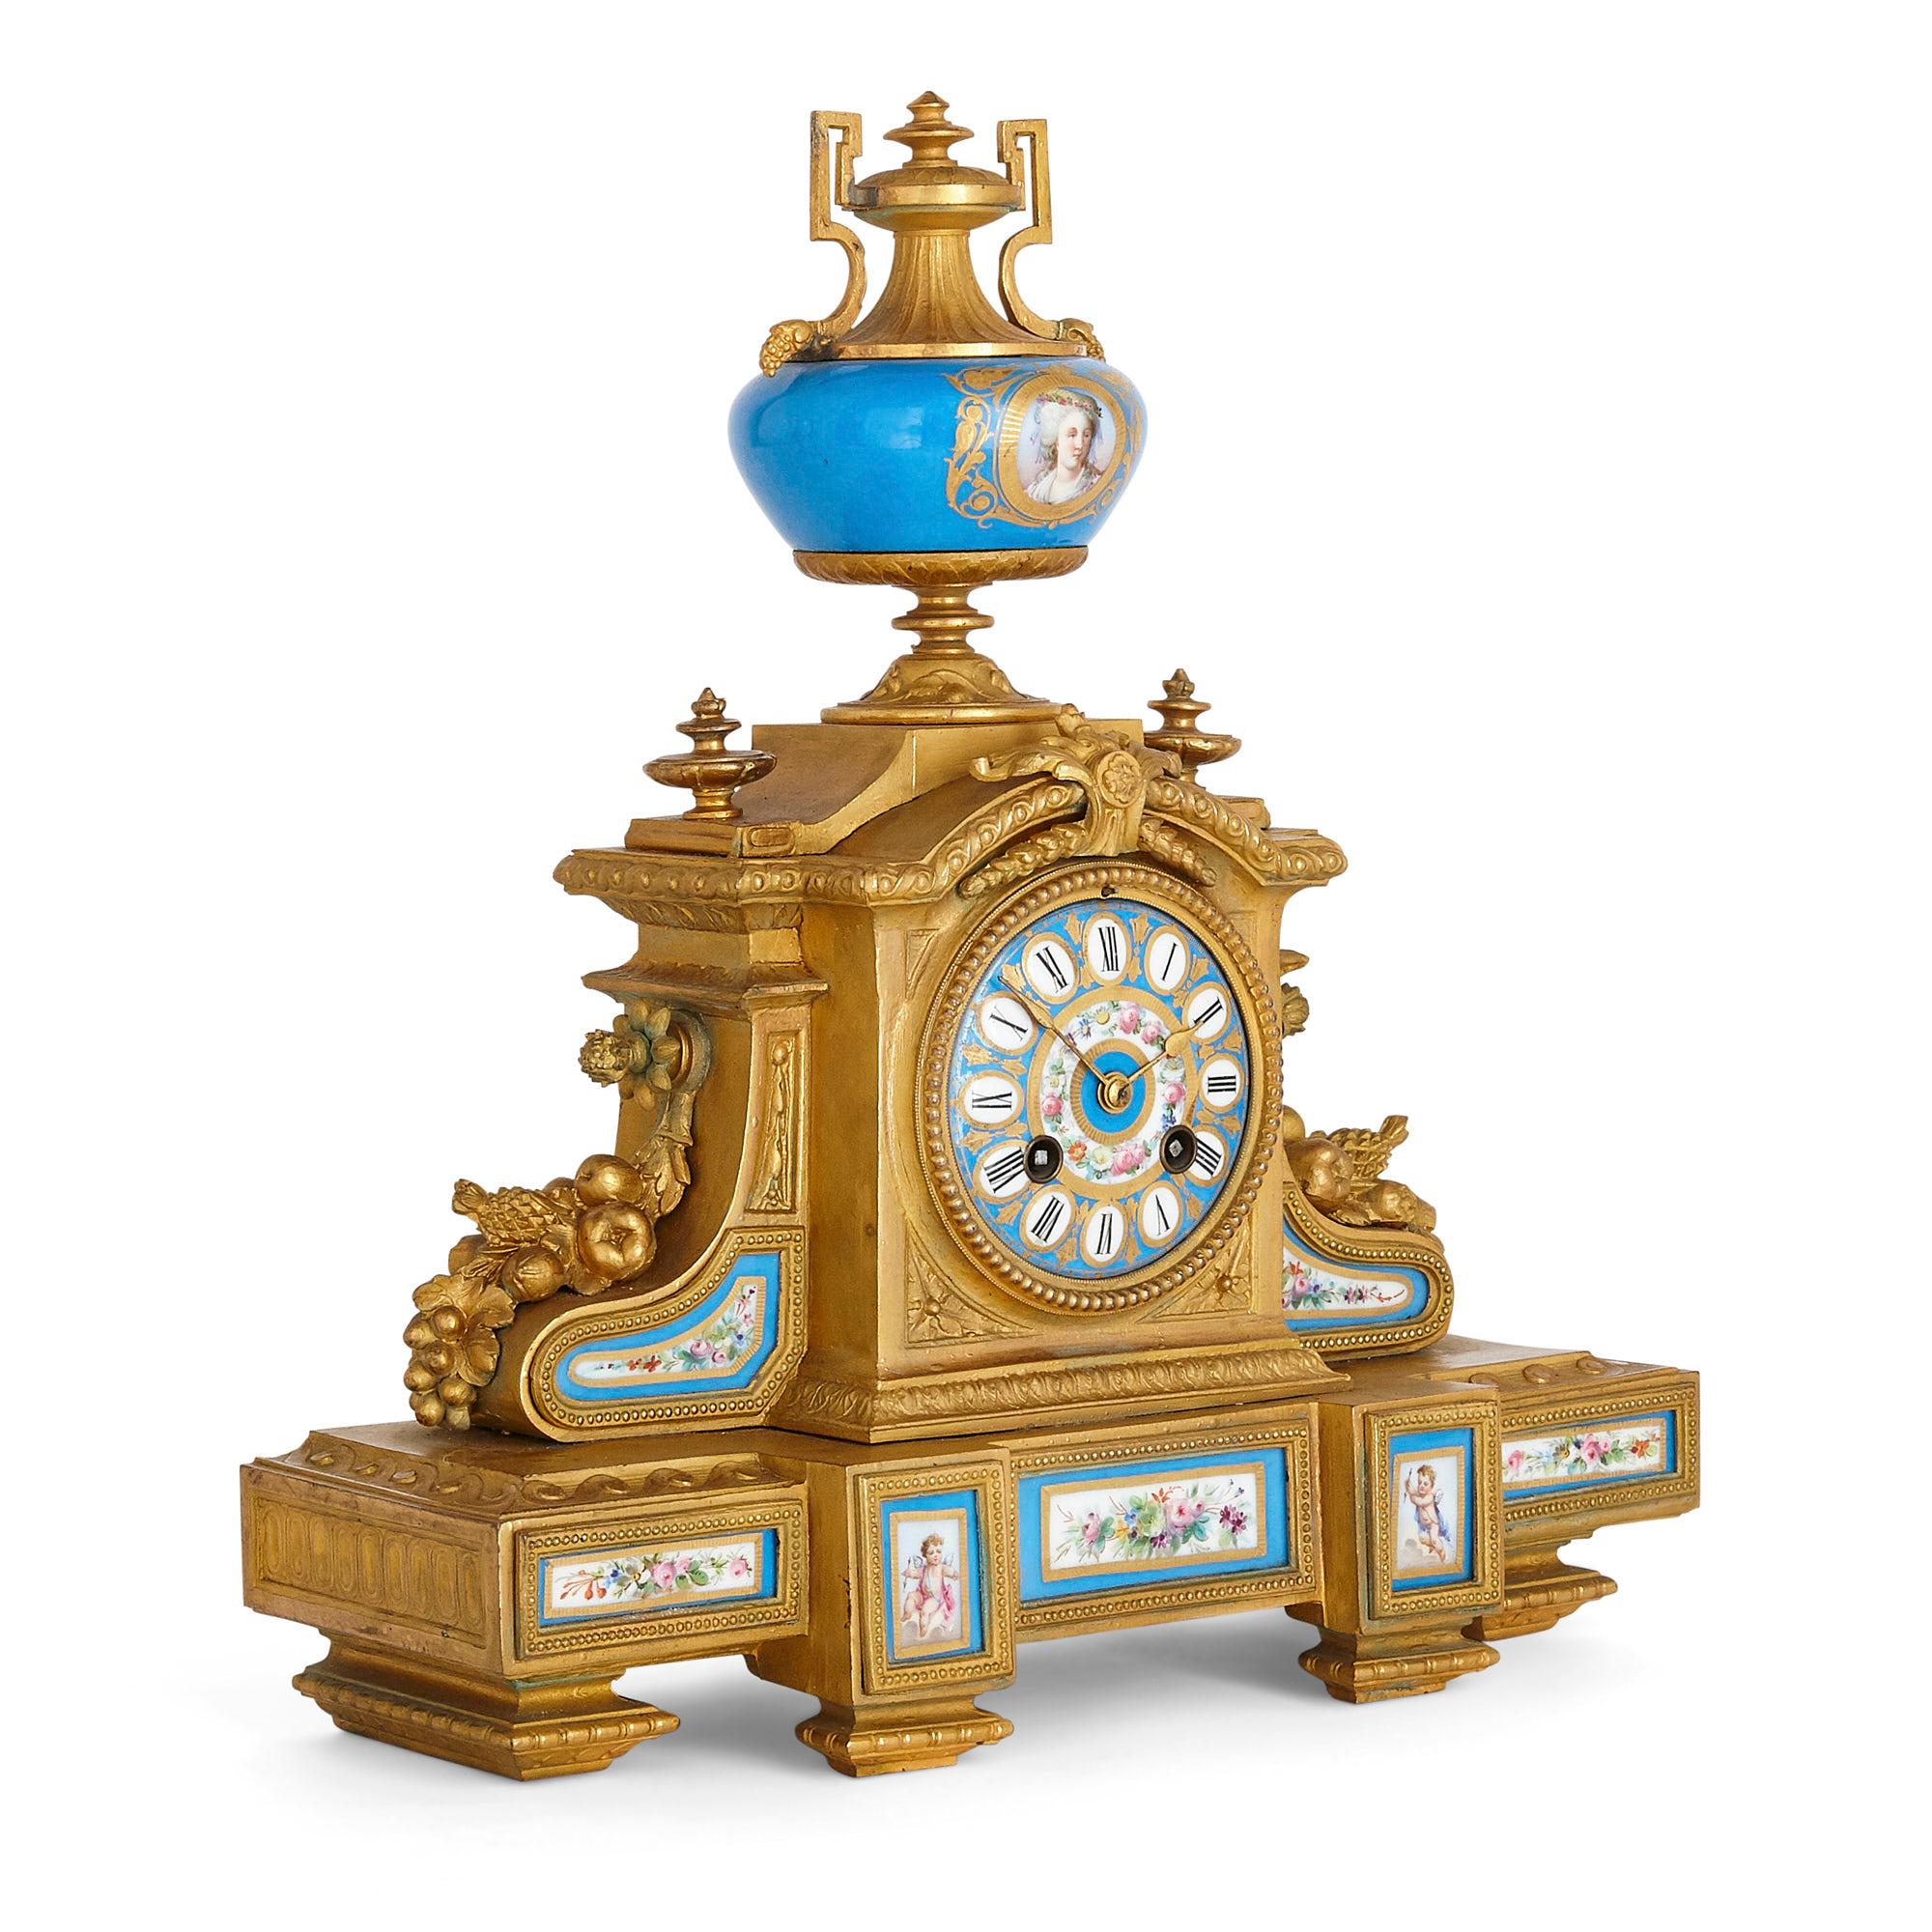 Antiker dreiteiliger Uhrensatz im Stil von Louis XV und Sèvres mit Tongefäß
Französisch, Ende 19. Jahrhundert
Abmessungen: Höhe 36cm, Breite 34cm, Tiefe 12cm

Dieses wunderschön verzierte Ormolu-Uhrenset besteht aus einer zentralen Kaminuhr und